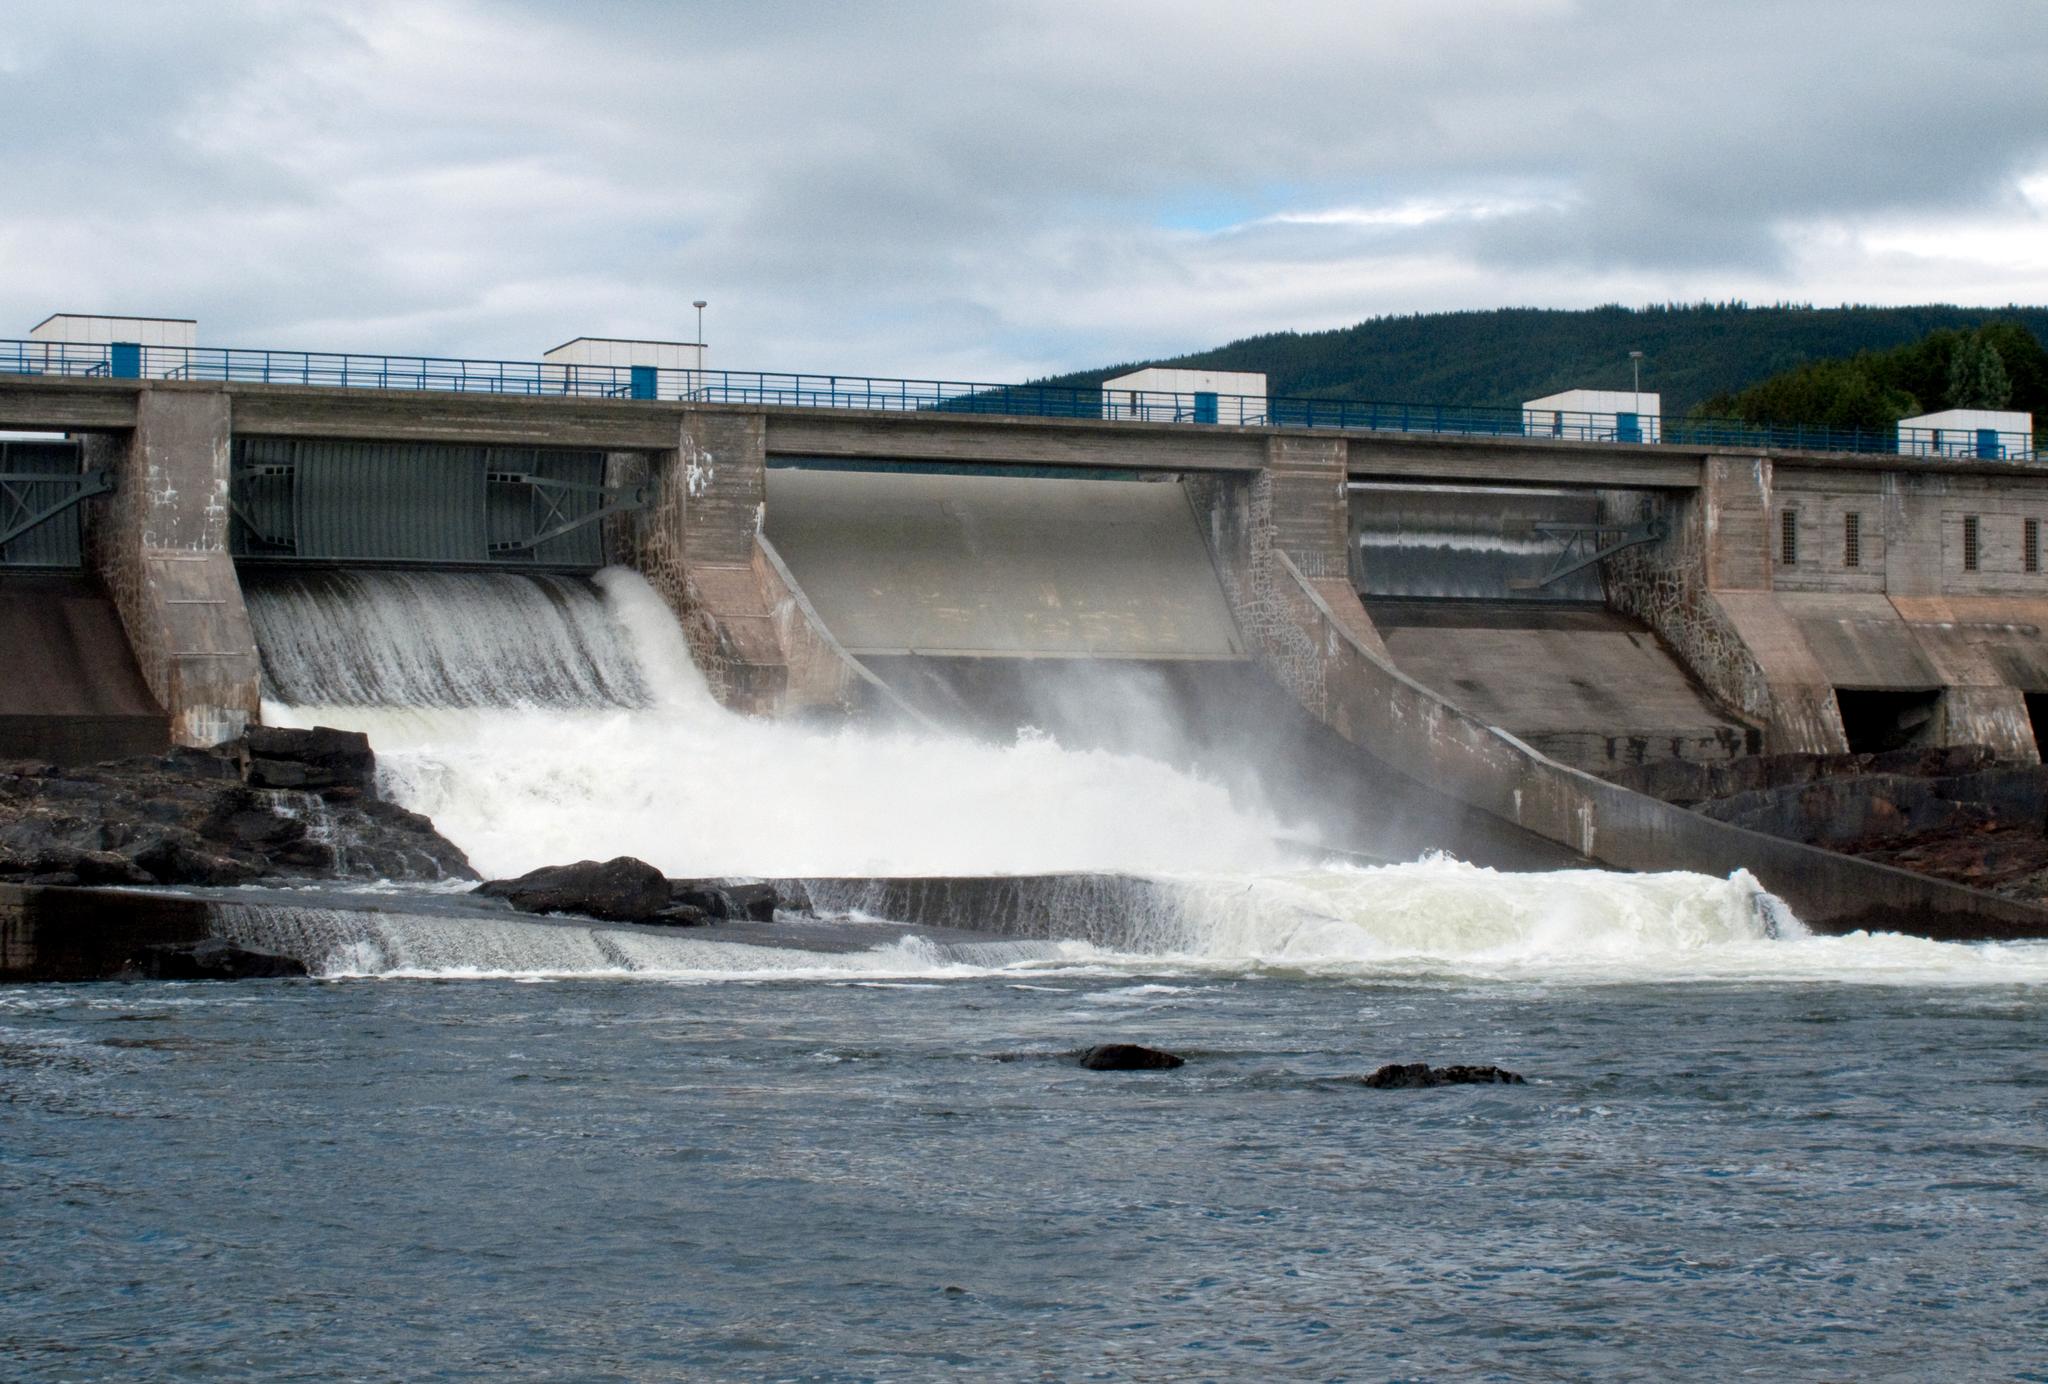 I 2019 sto vannkraften for rundt 93 prosent av kraftproduksjonen i Norge, mens vindkraft sto for 4 prosent. På bildet ser vi Hunderfossen kraftstasjon i Gudbrandsdalslågen. 